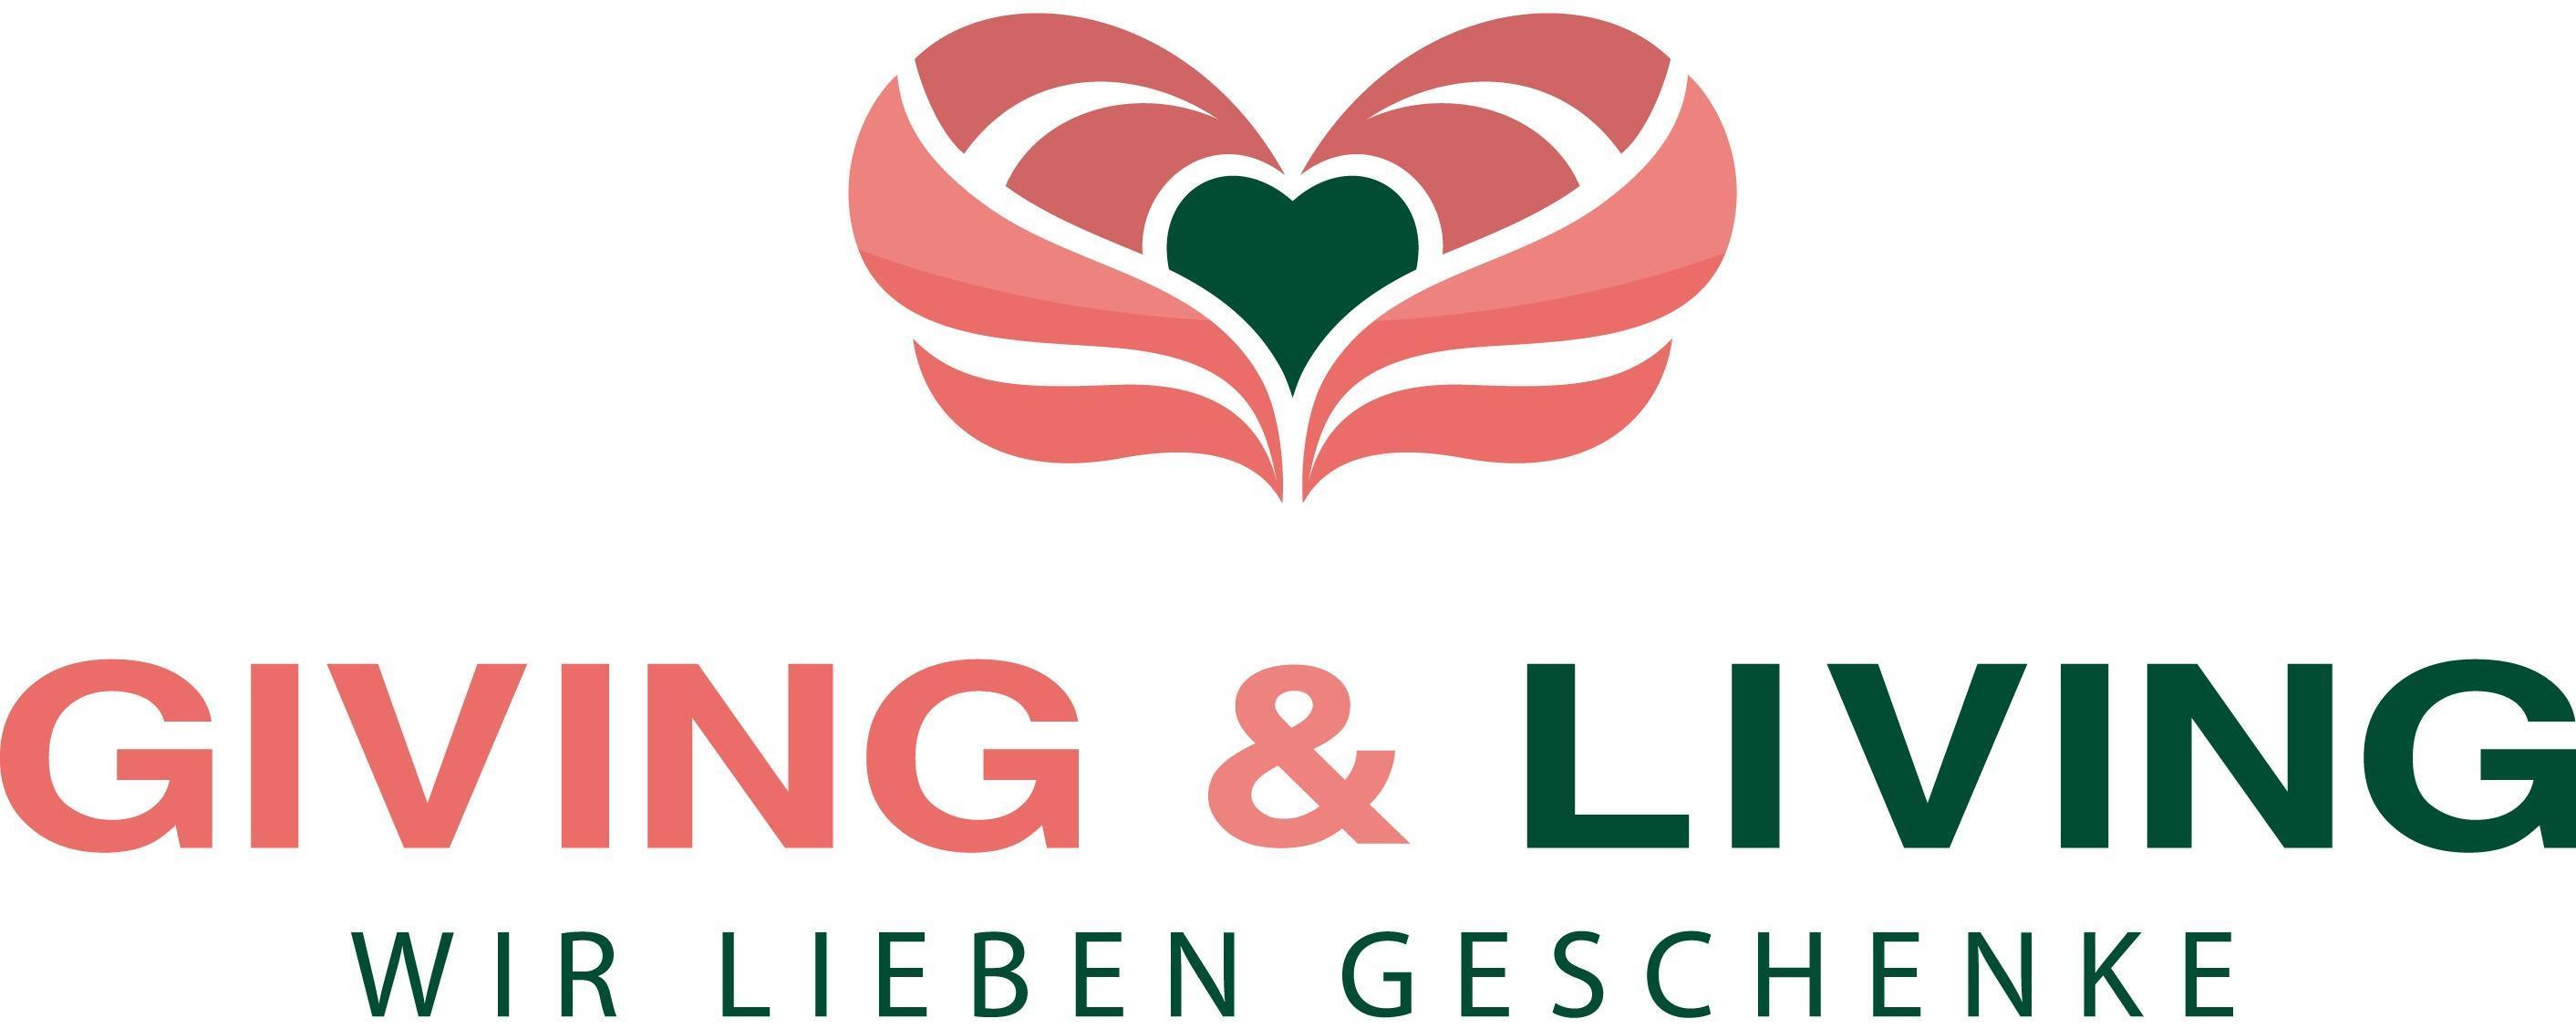 Logo GIVING & LIVING - Geschenkboutique